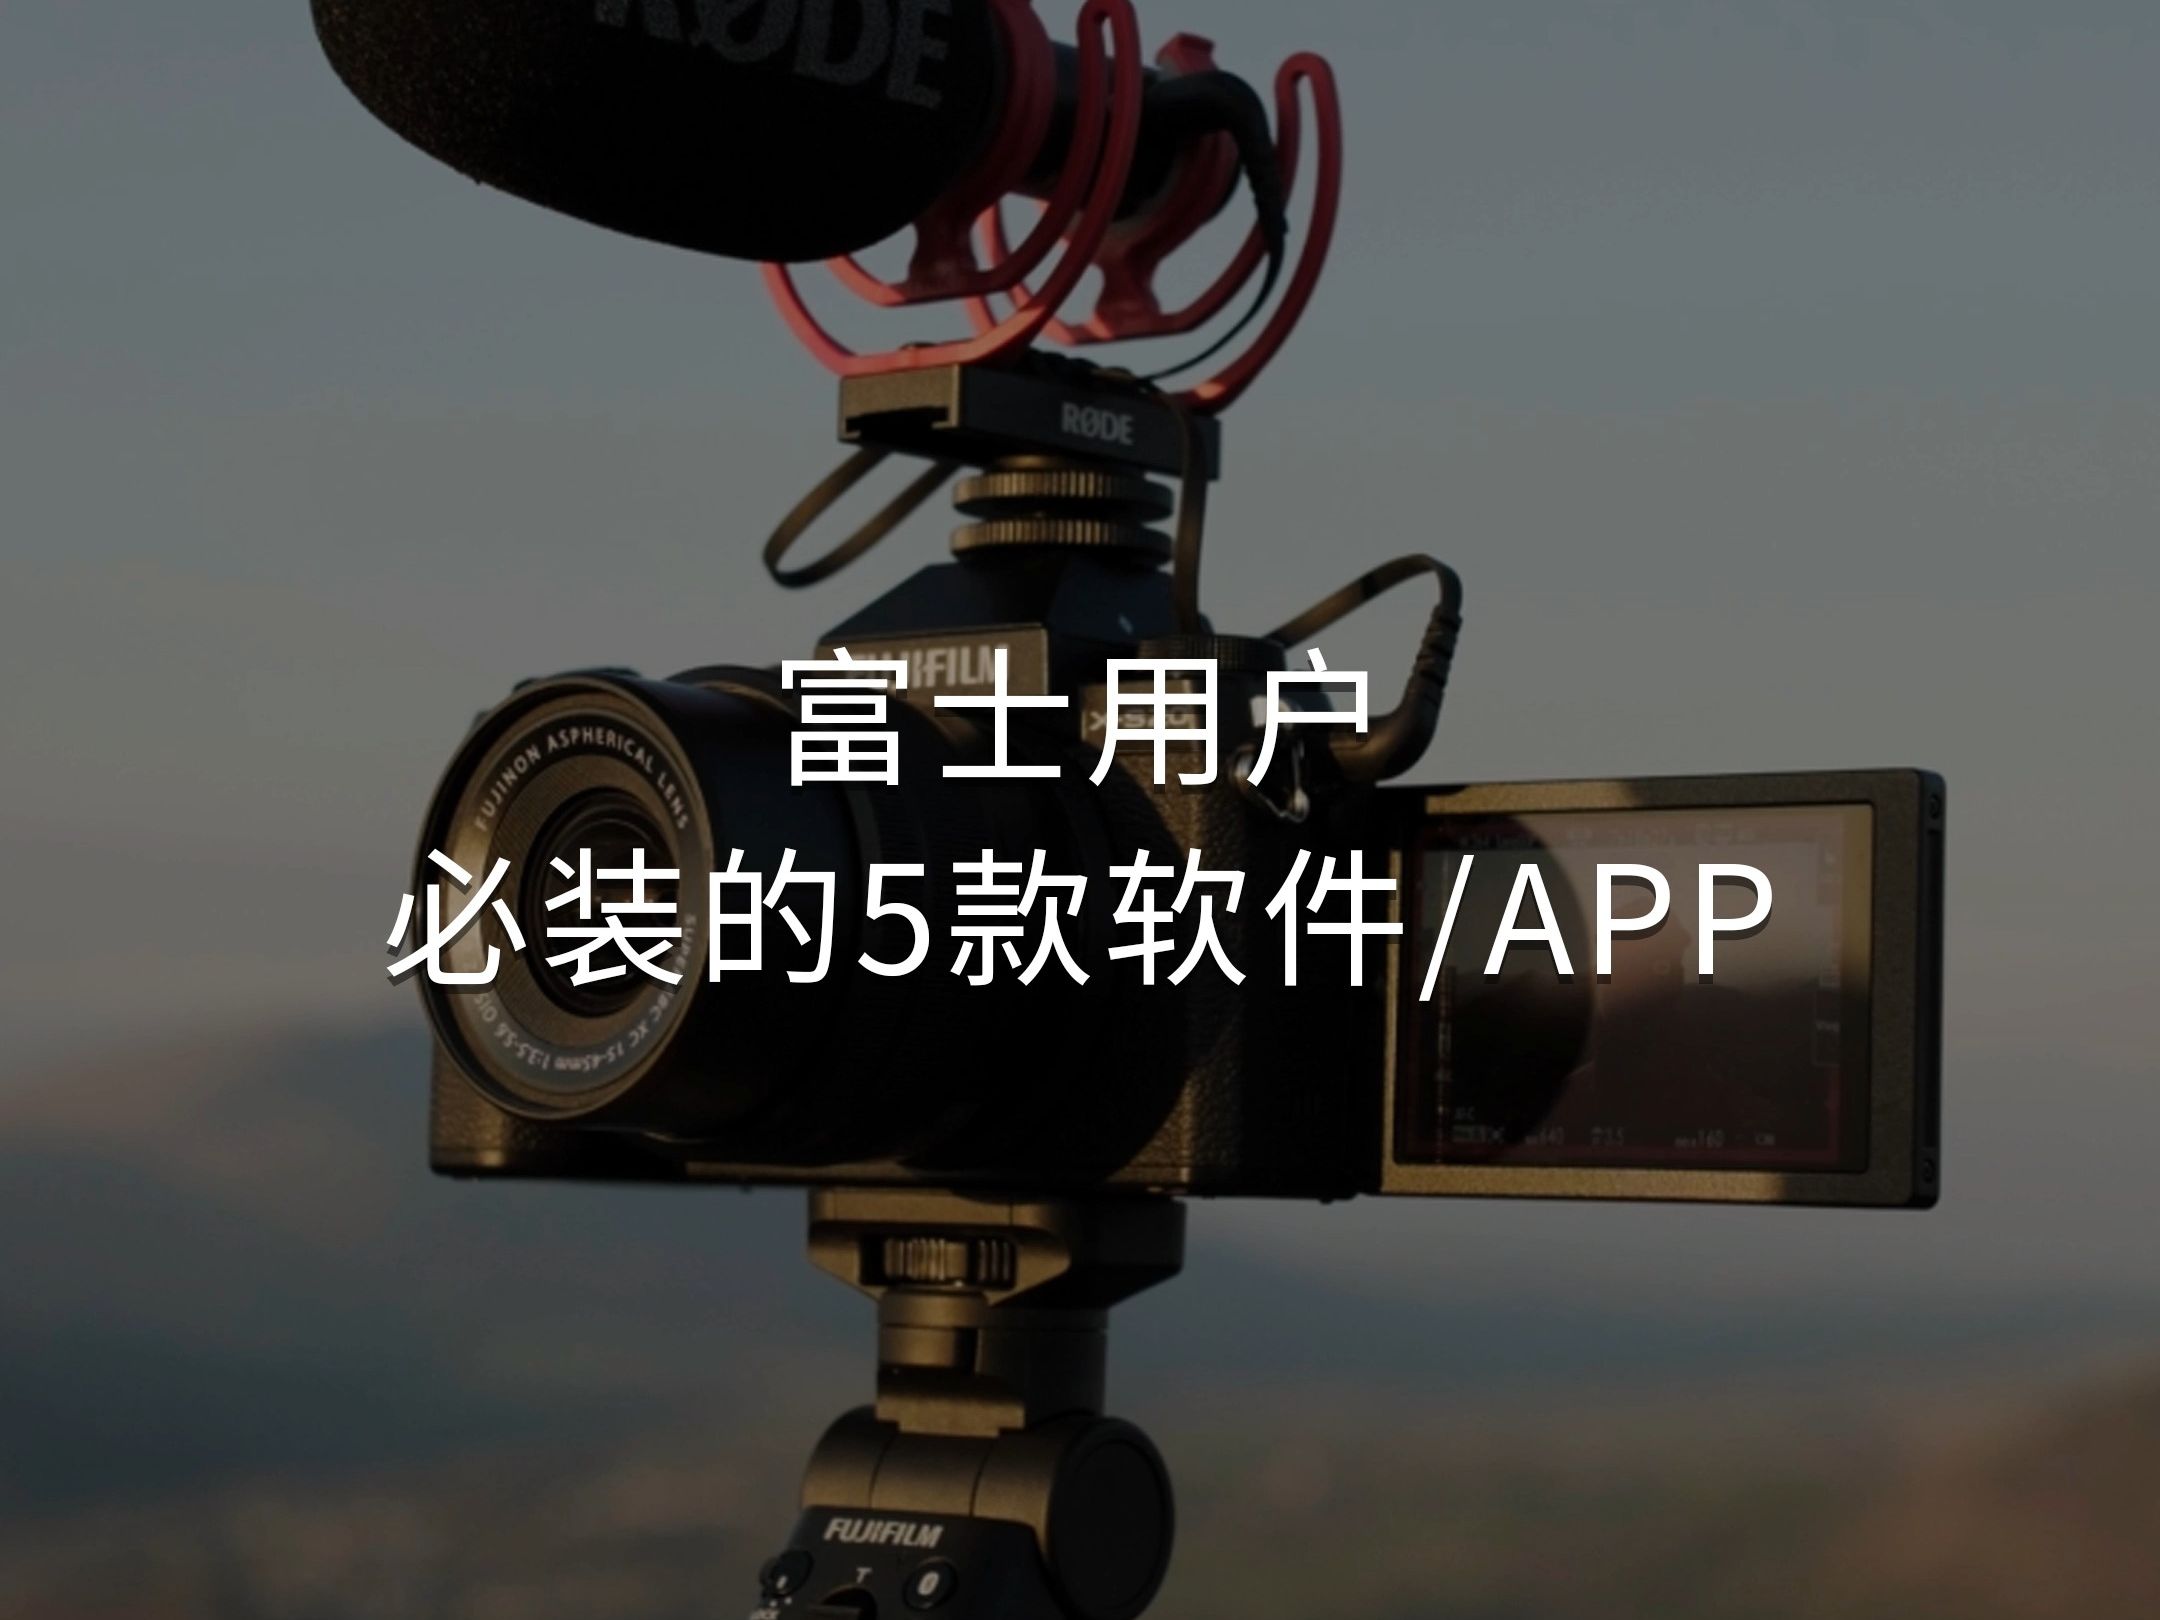 如果你有一台富士相机，那么这5款实用软件建议您安装上，适合直播、修图、传输和拍摄等。